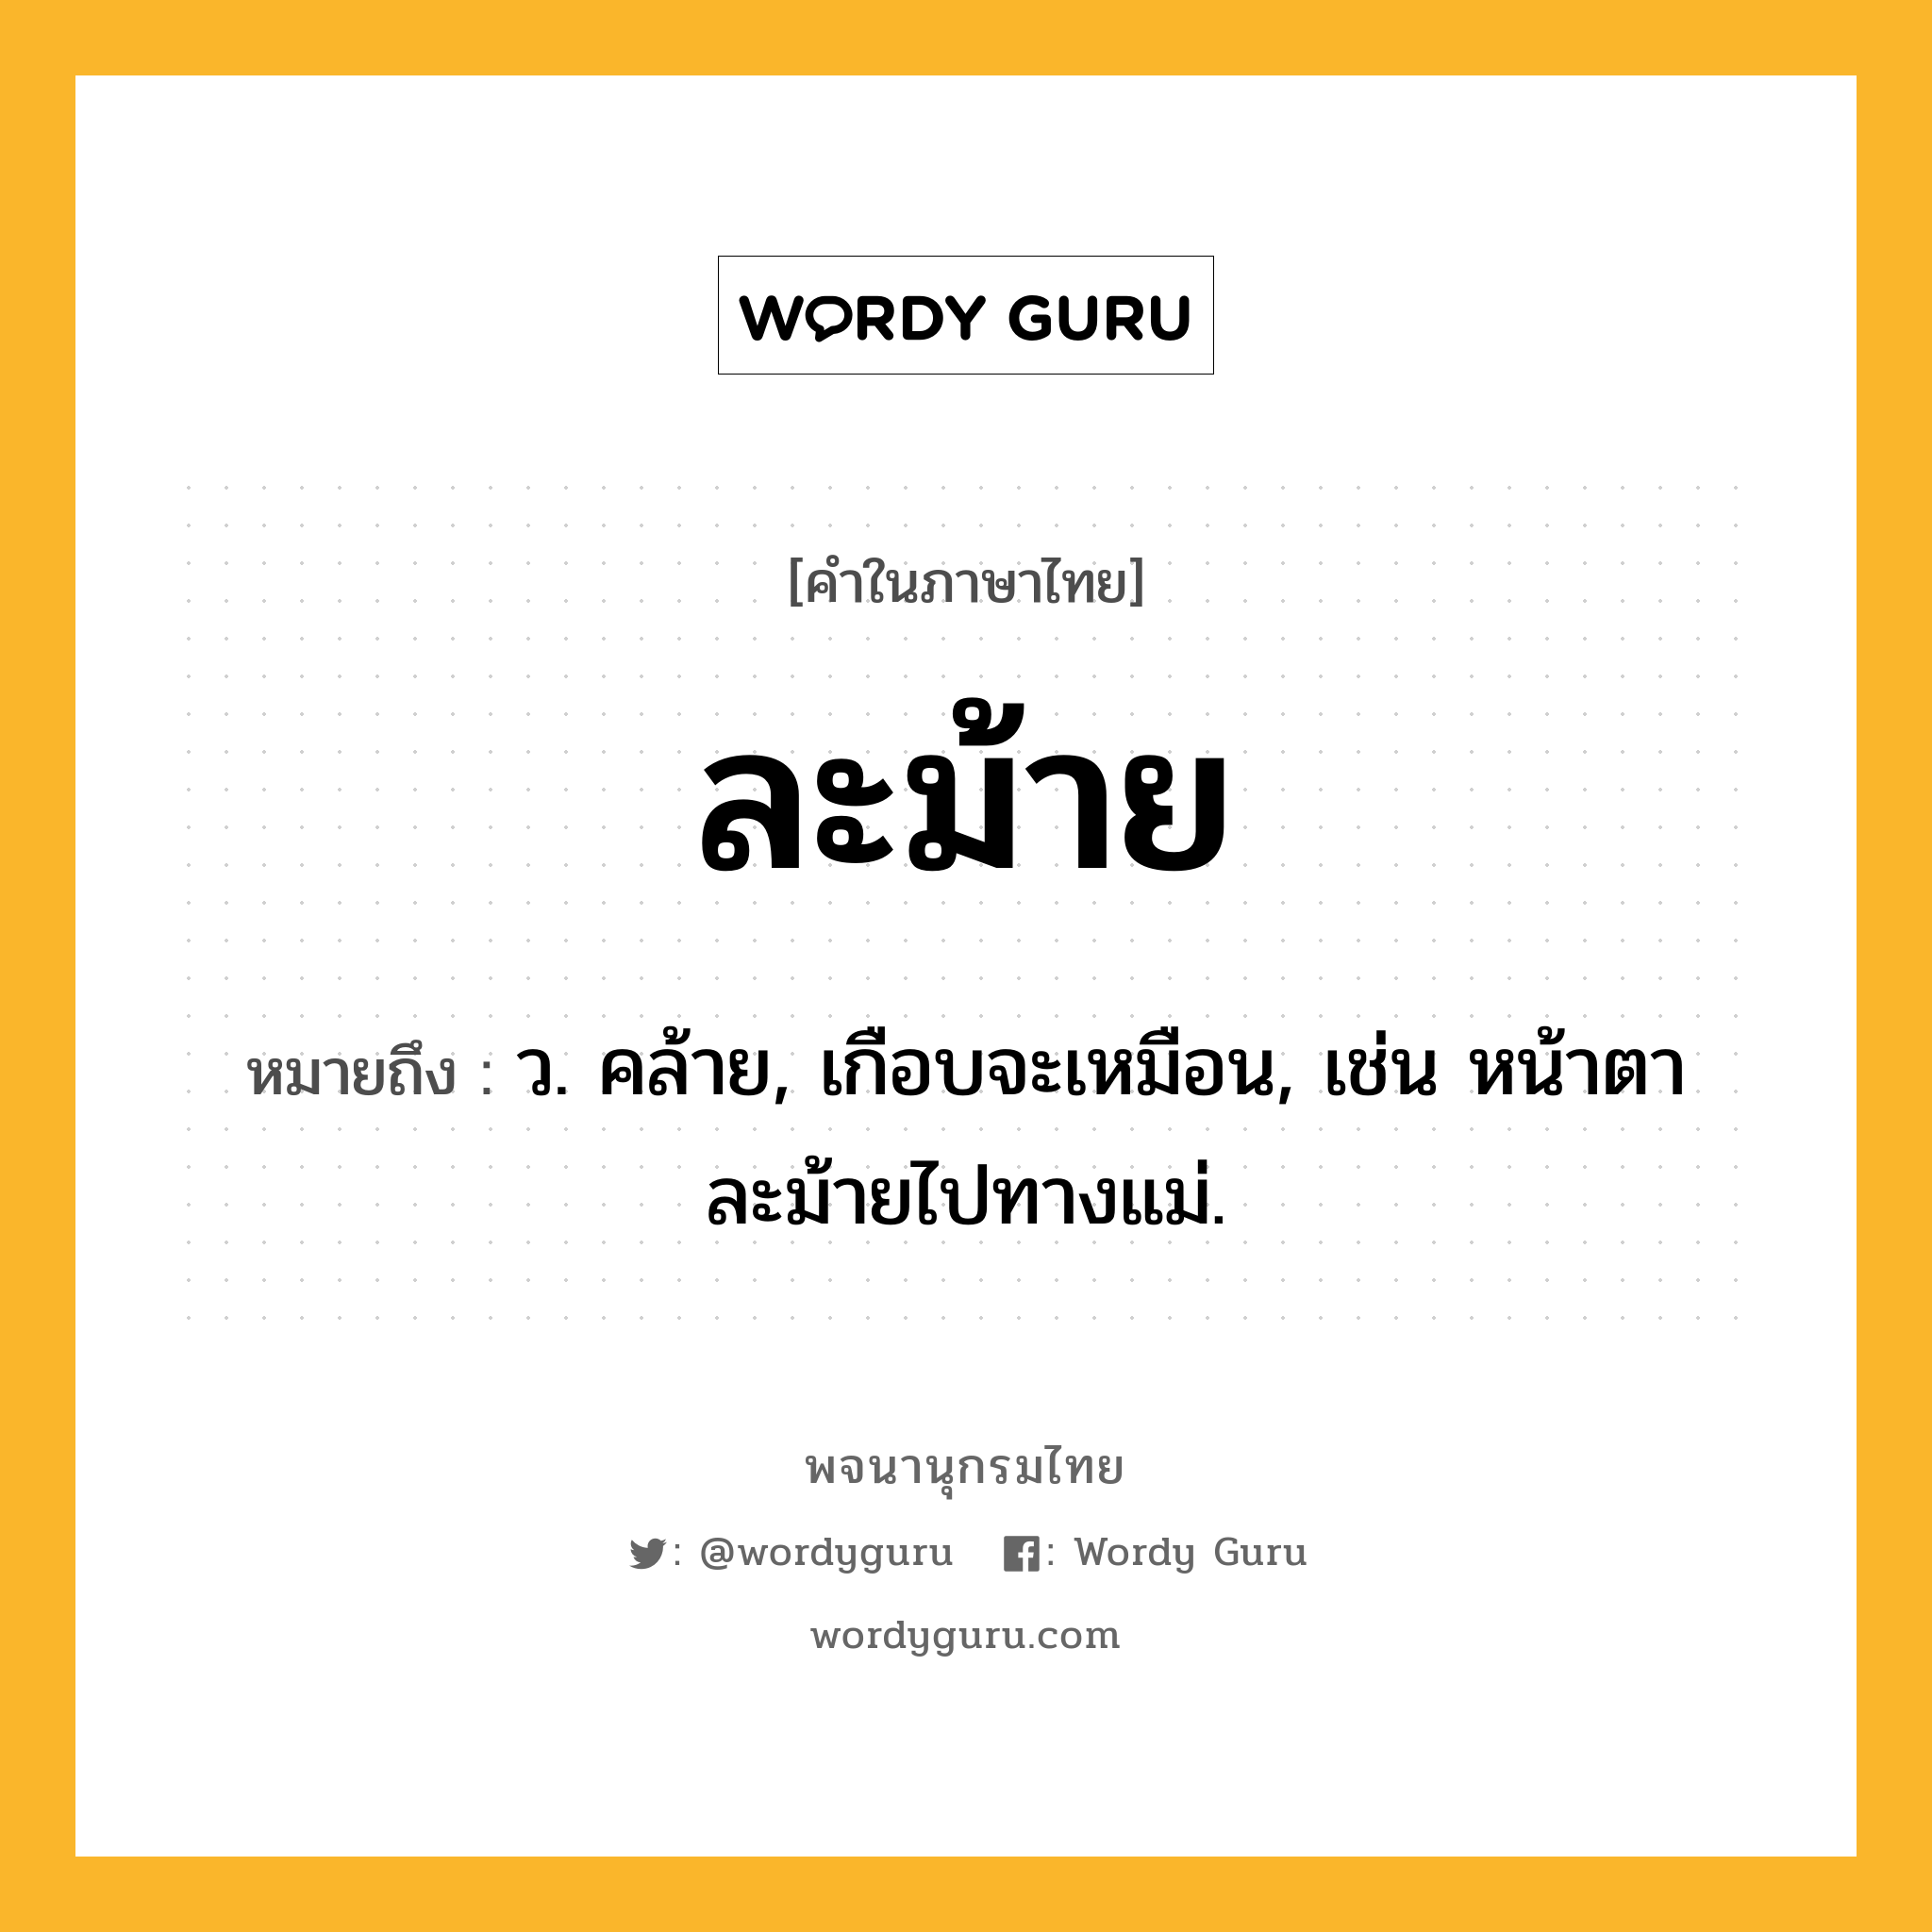 ละม้าย หมายถึงอะไร?, คำในภาษาไทย ละม้าย หมายถึง ว. คล้าย, เกือบจะเหมือน, เช่น หน้าตาละม้ายไปทางแม่.